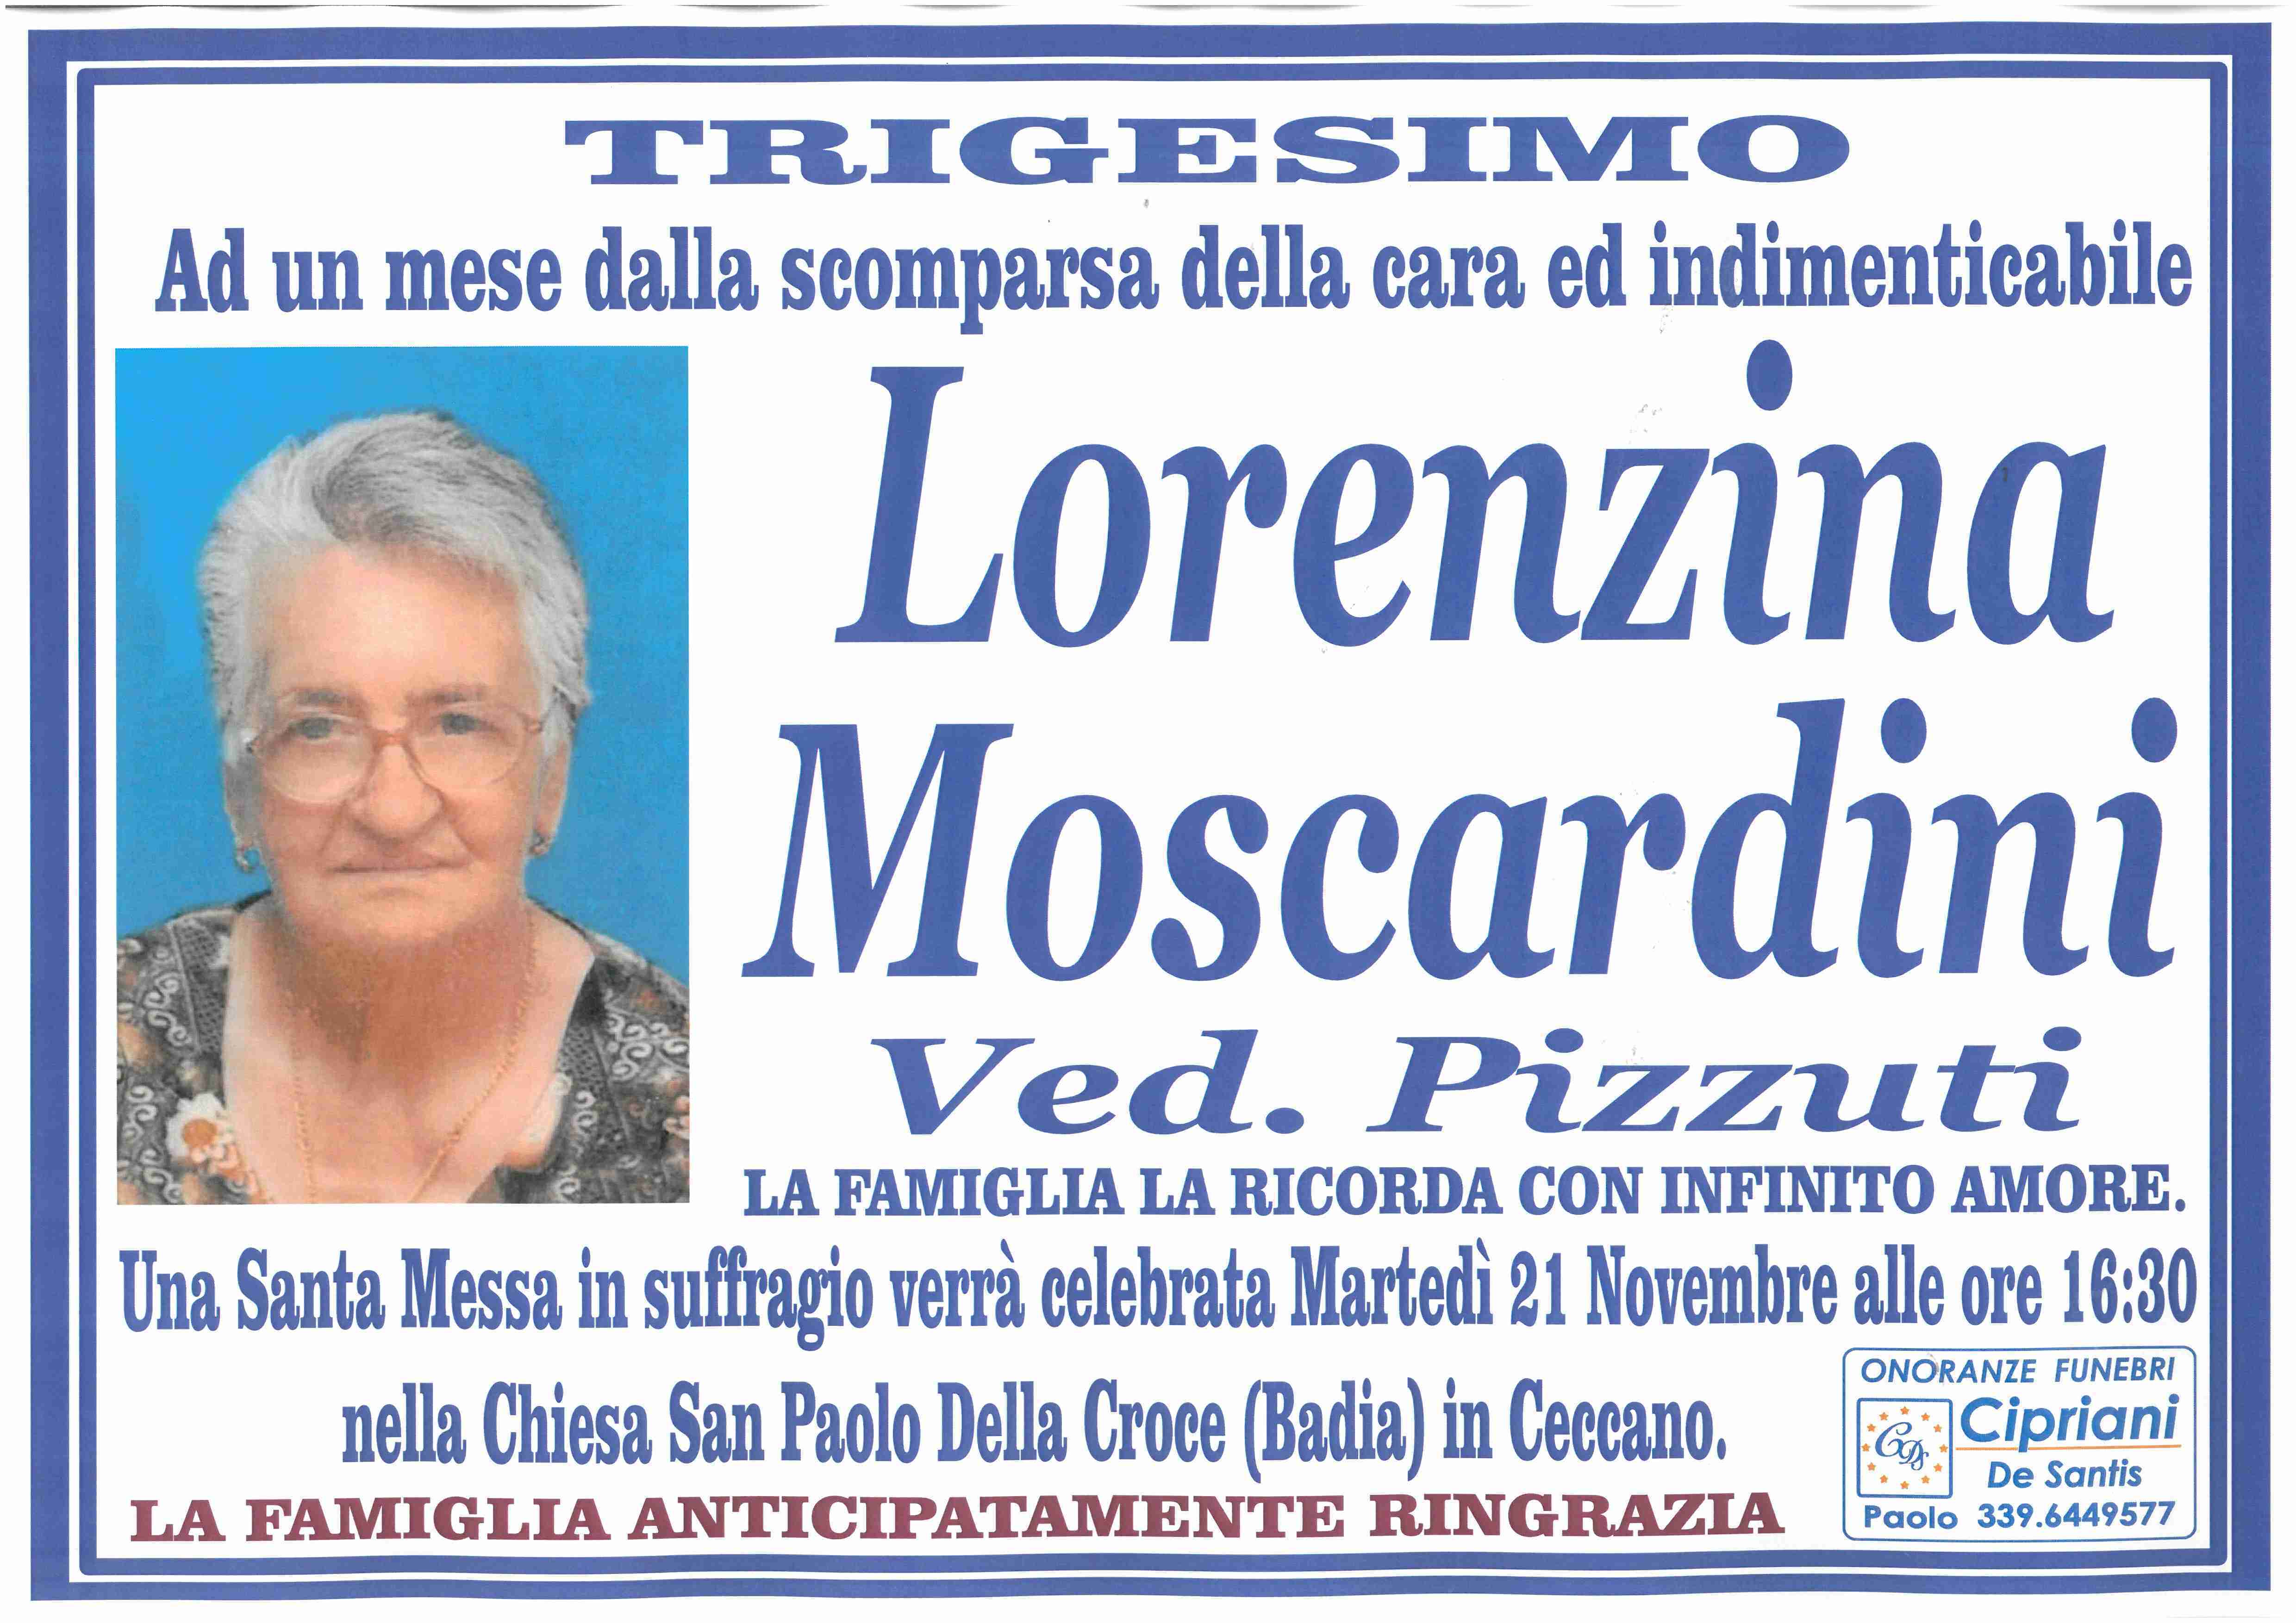 Lorenzina Moscardini